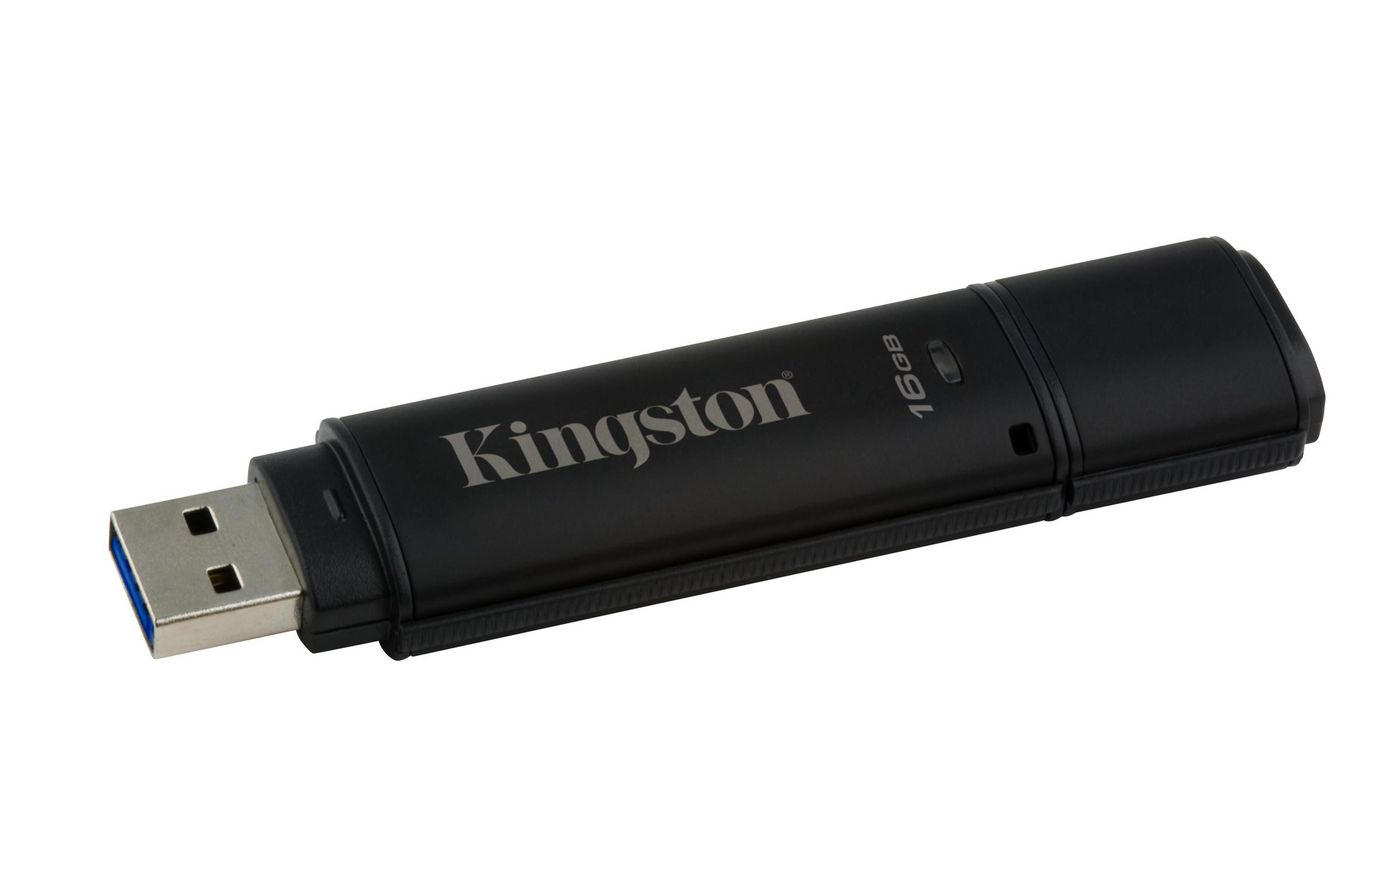 KINGSTON 16GB USB 3.0 DT4000 G2 256 AES FIPS 140-